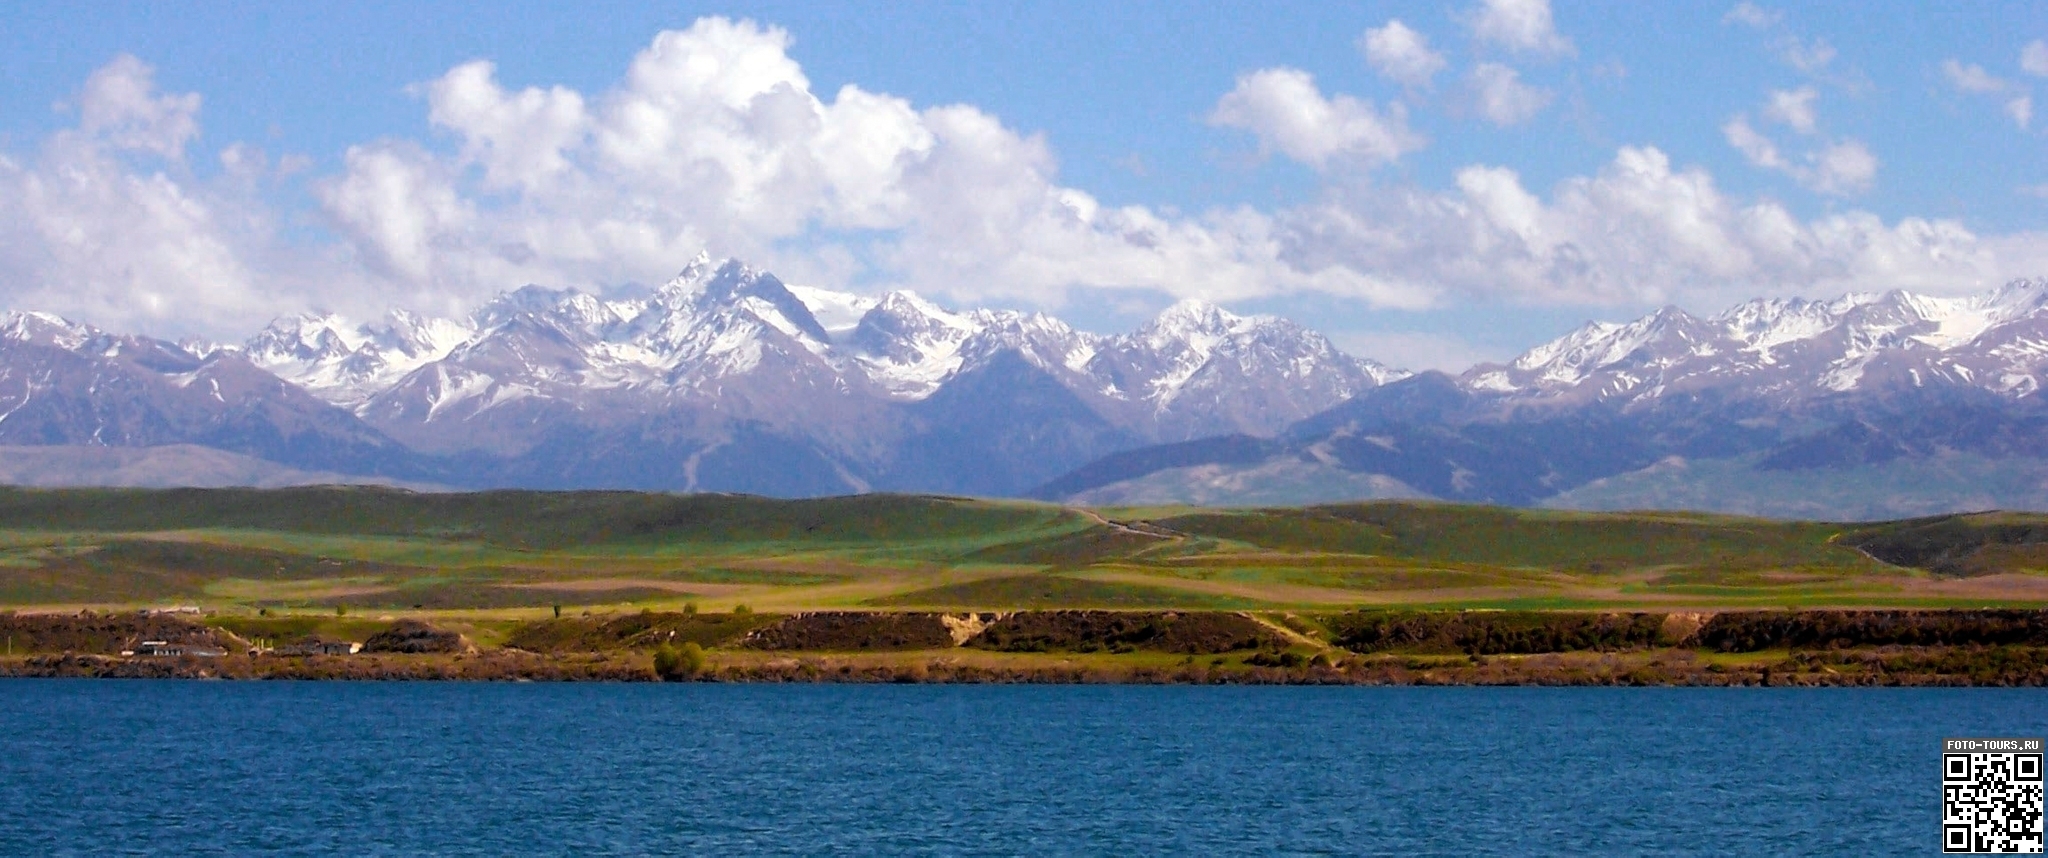 Озеро Иссык-куль в Иссык-Куле, Кыргызстан, Азия.